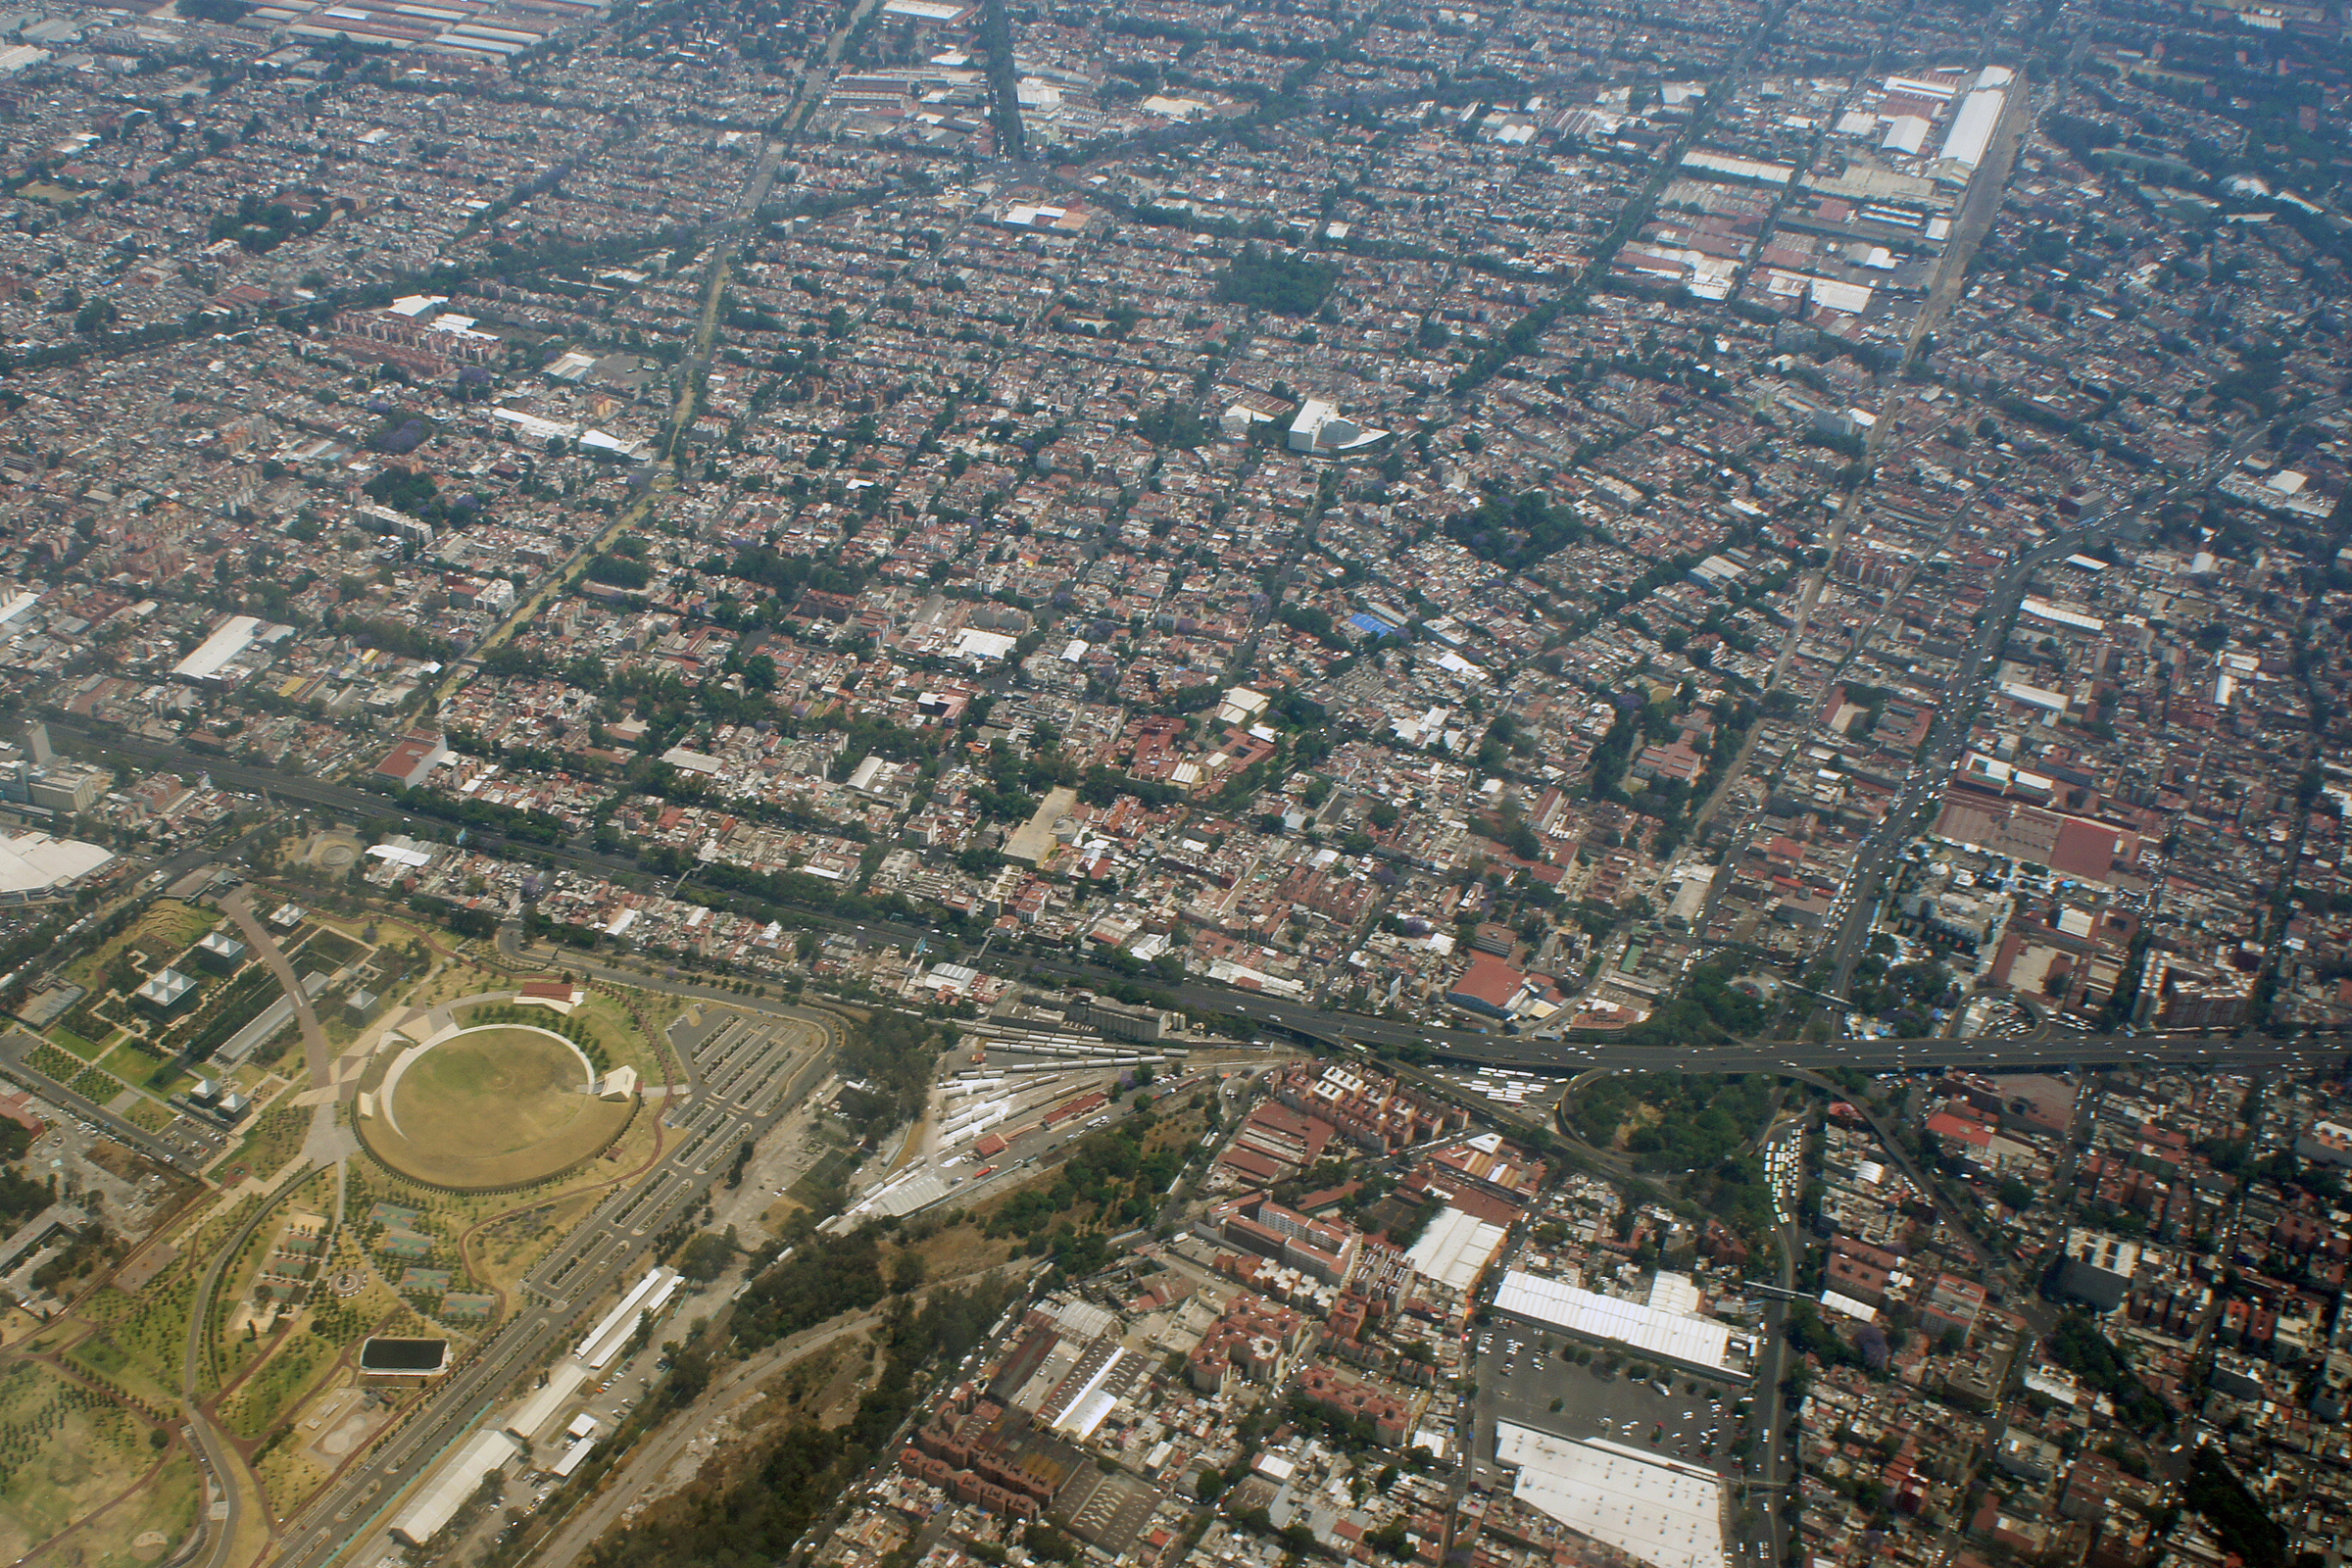 Aerial view DF 03 2014 MEX 7823